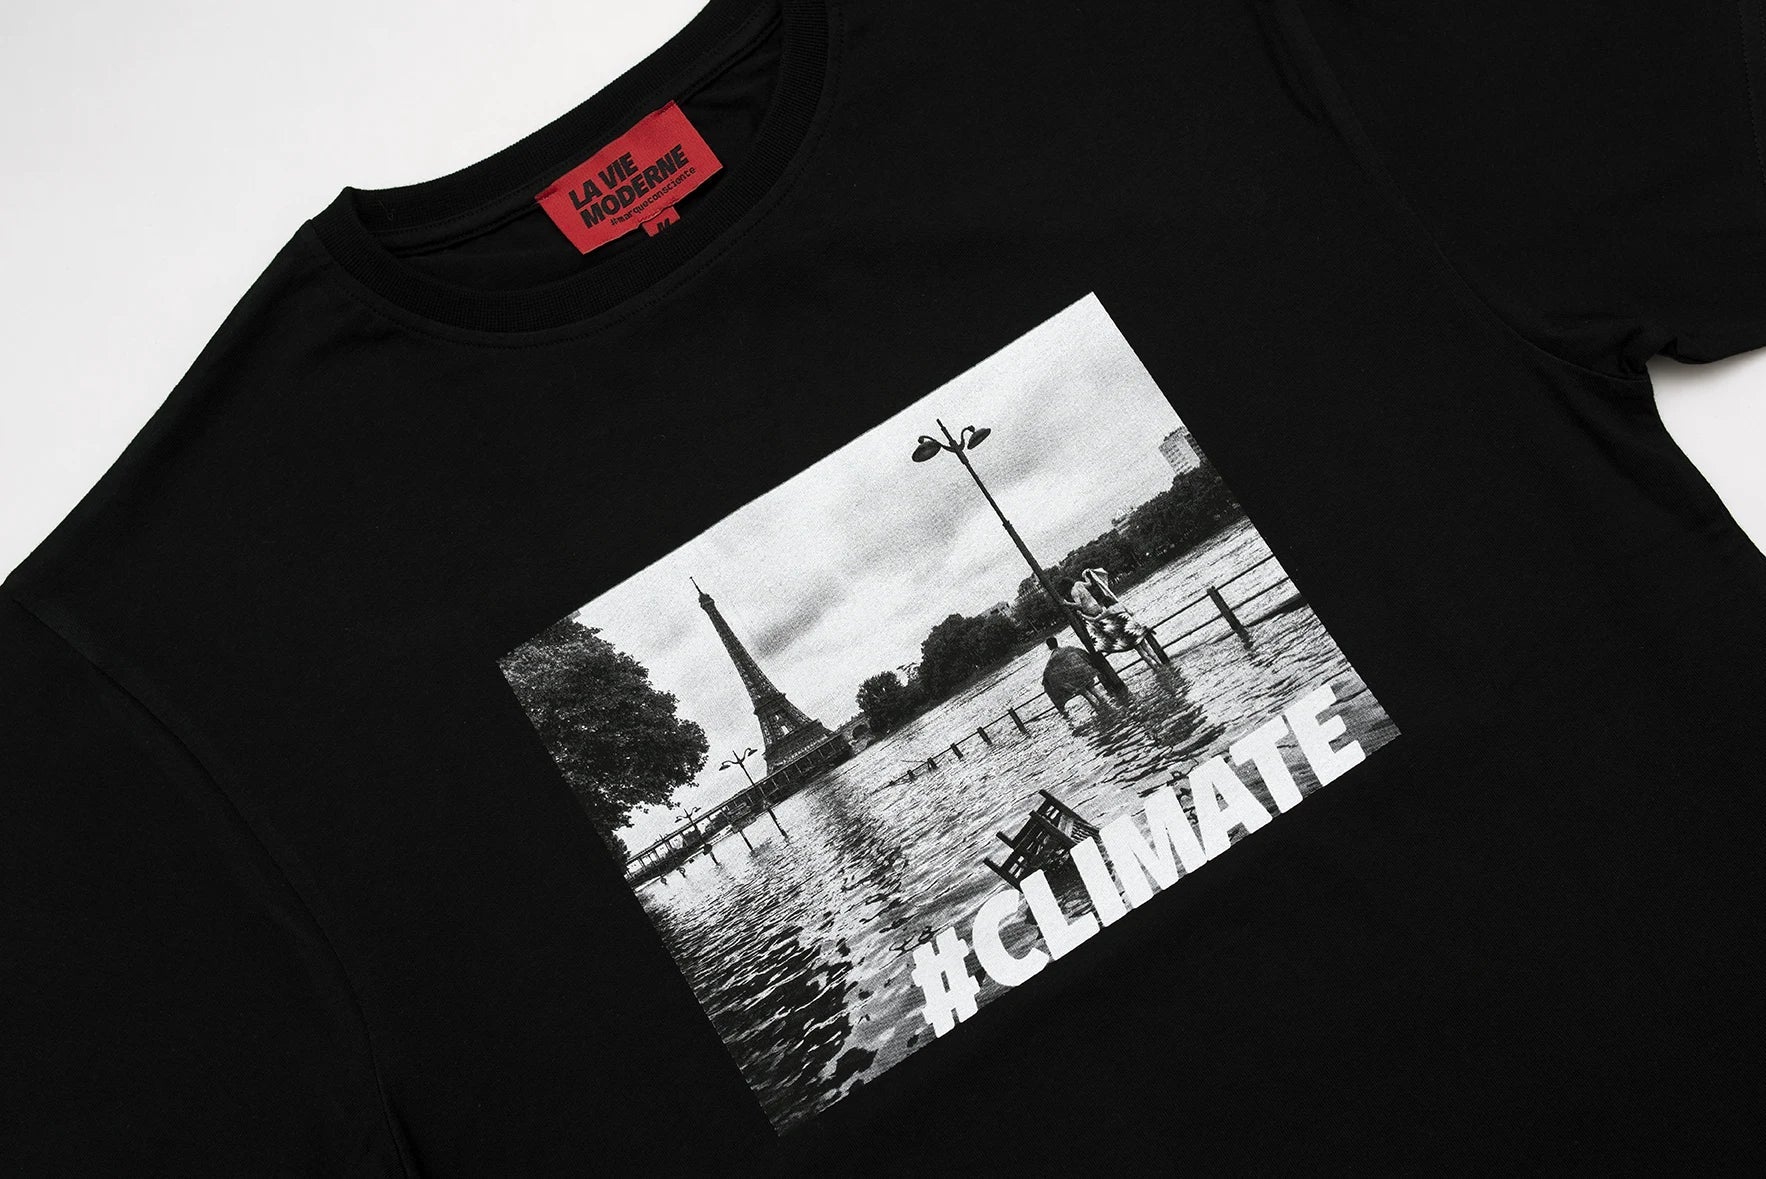 T-shirt Climate - Noir -f